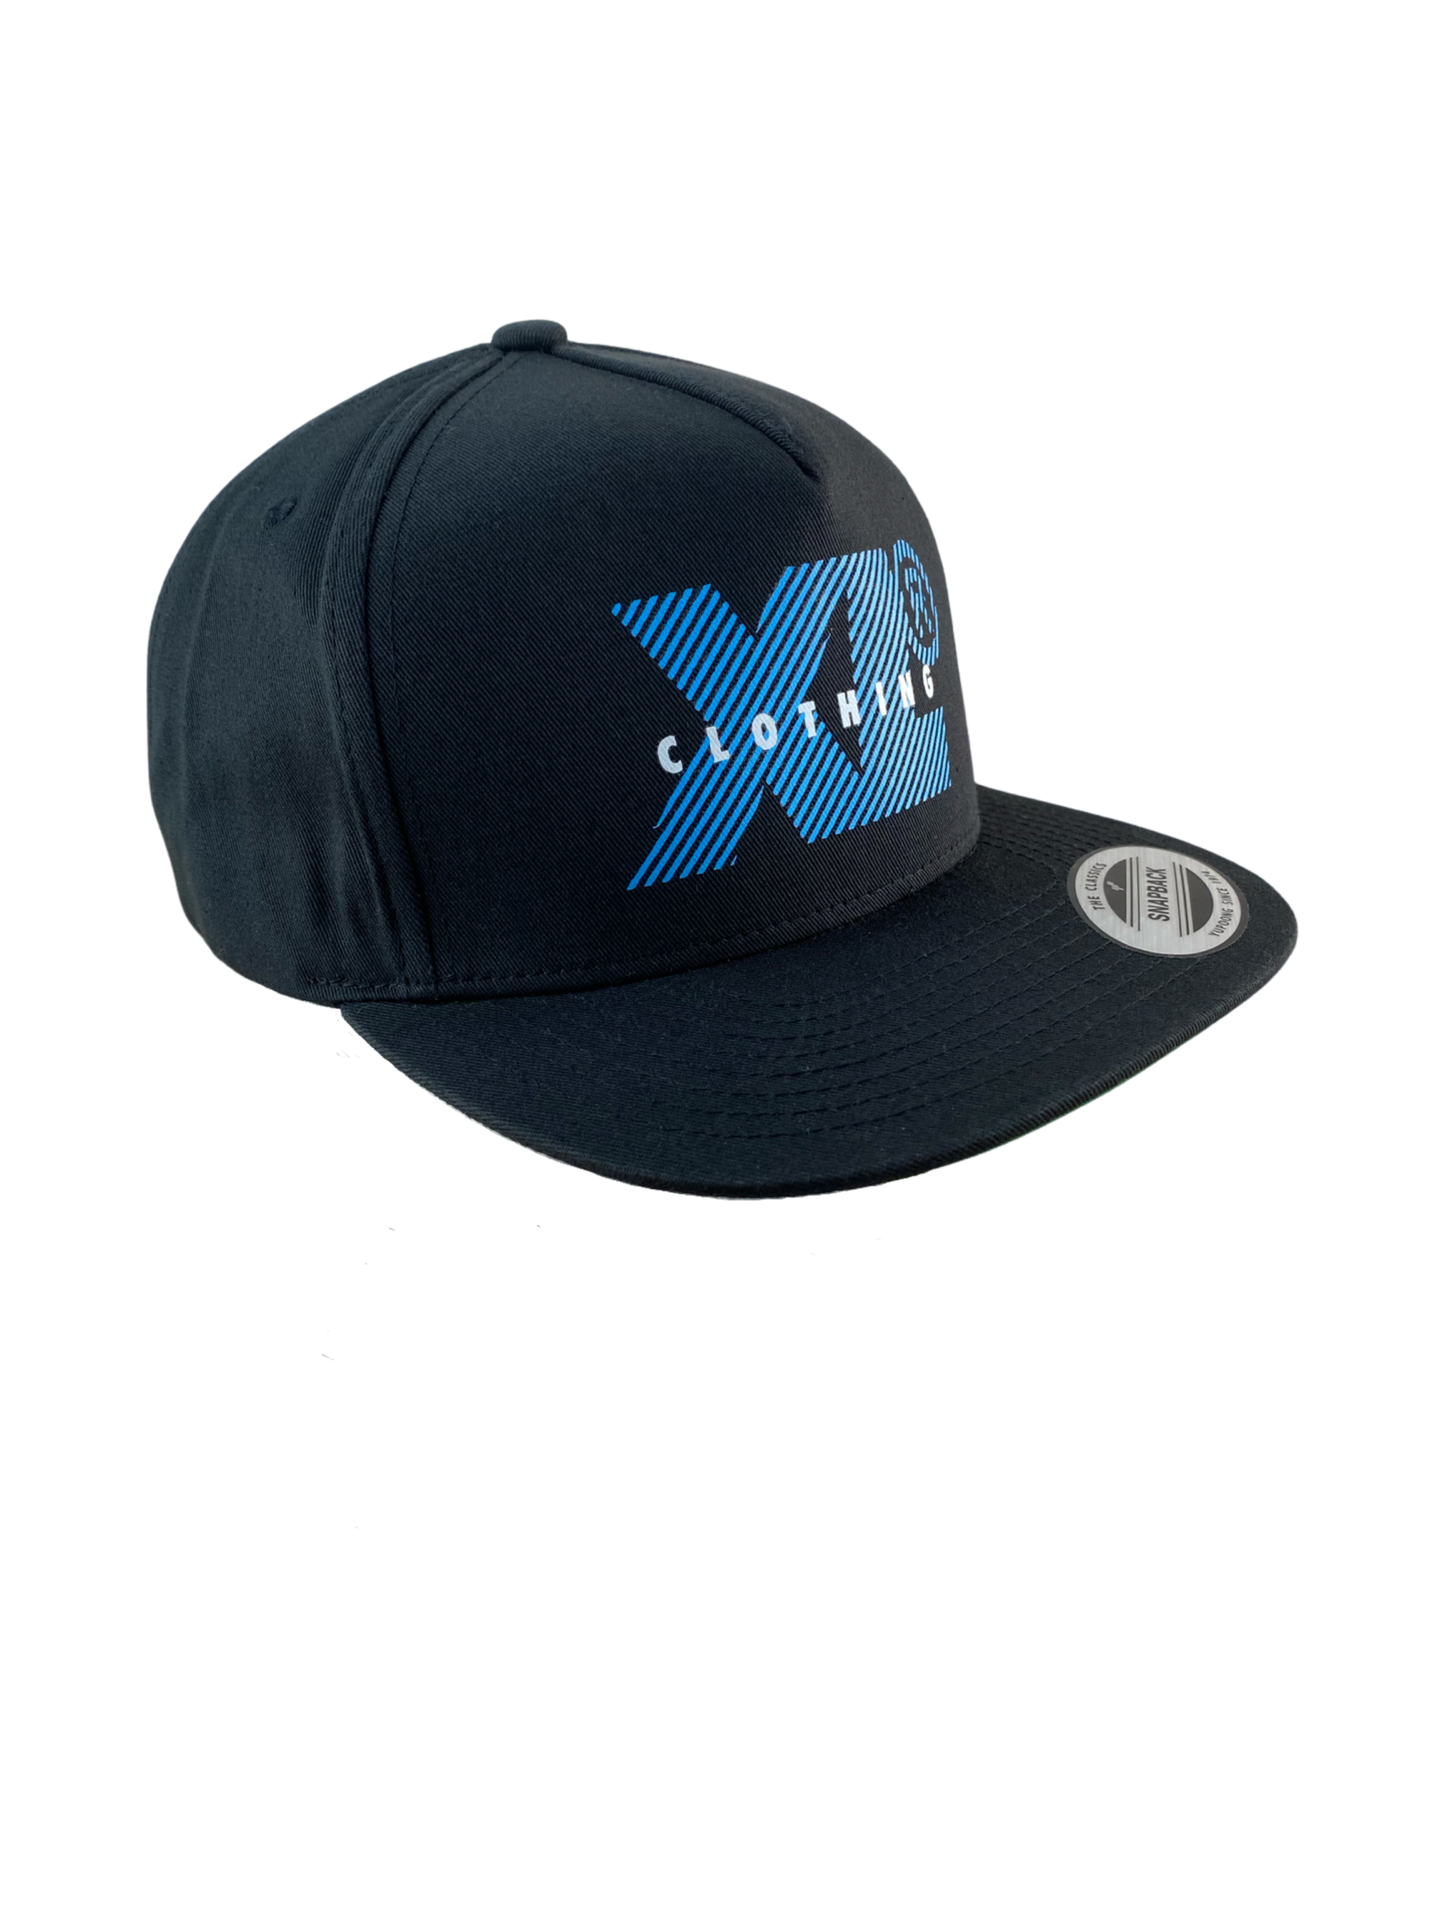 X-Large Cap "Sigalert Hat" -blackclassic snapback Hellblau gestreiftes "XL-Clothing" Logo Print auf der Frontseite, Innenschirm grün  schwarz Verstellbarer Snapback Verschluß, Umfang 60cm